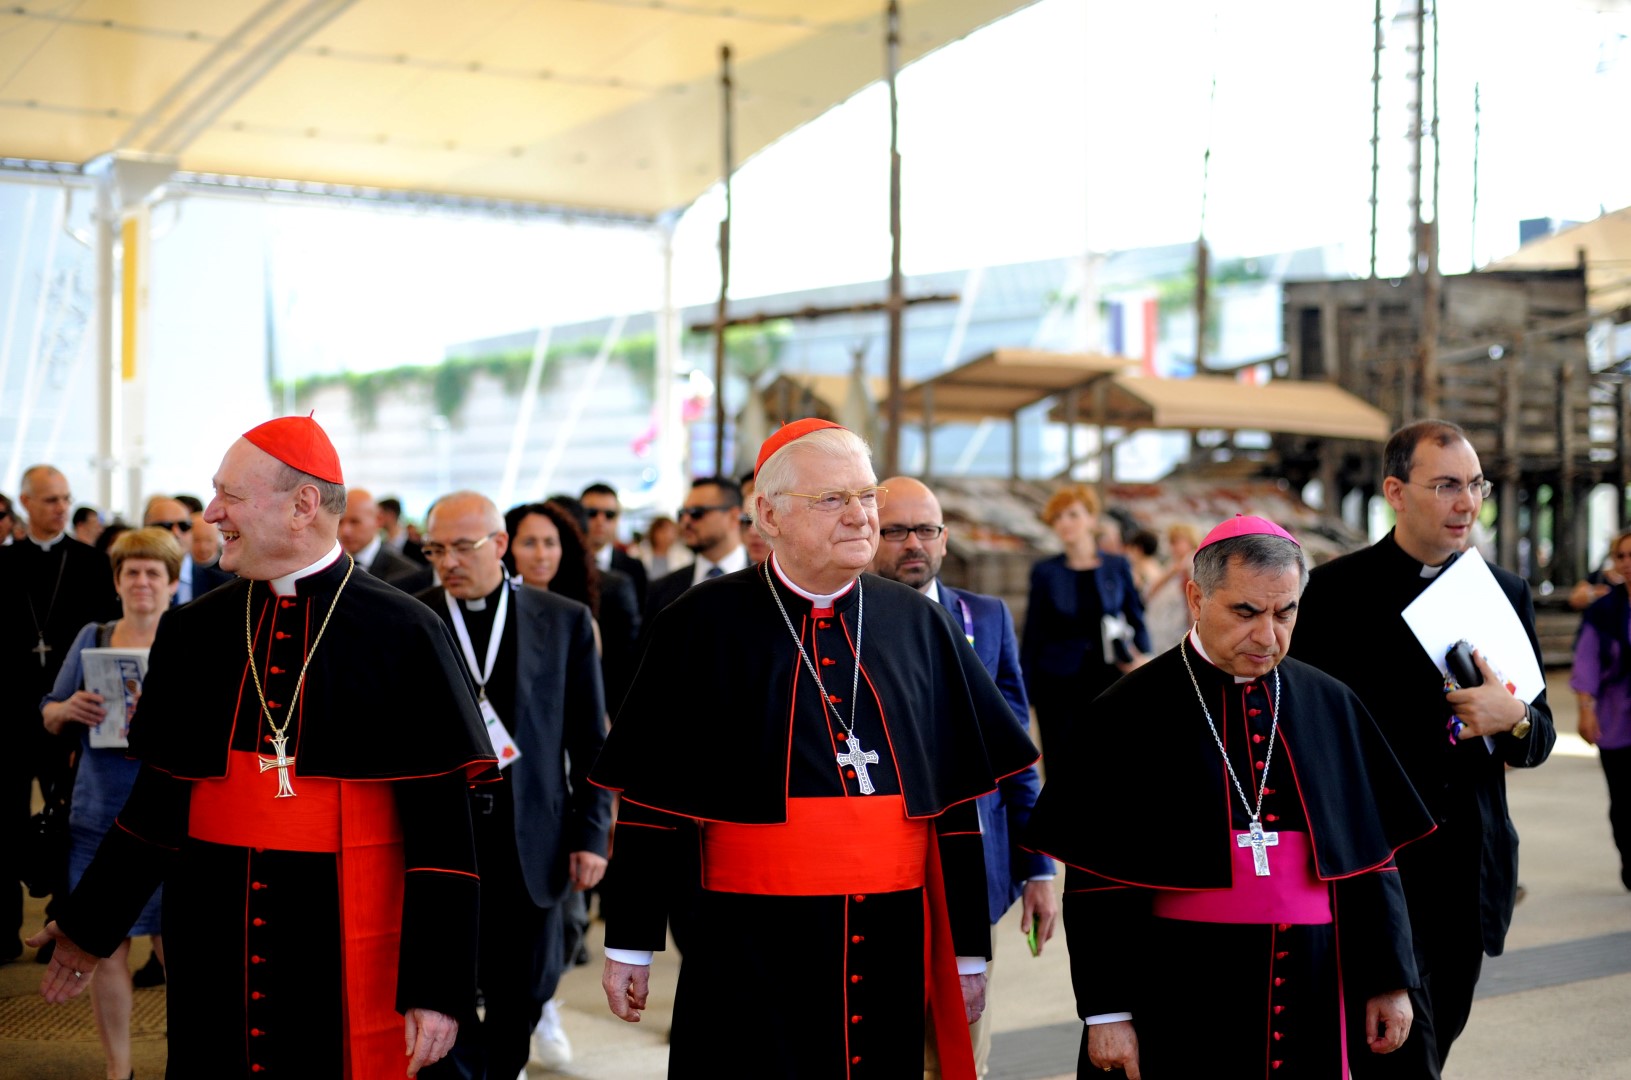 Expo Milano 2015: le celebrazioni del National Day della Santa Sede, le foto